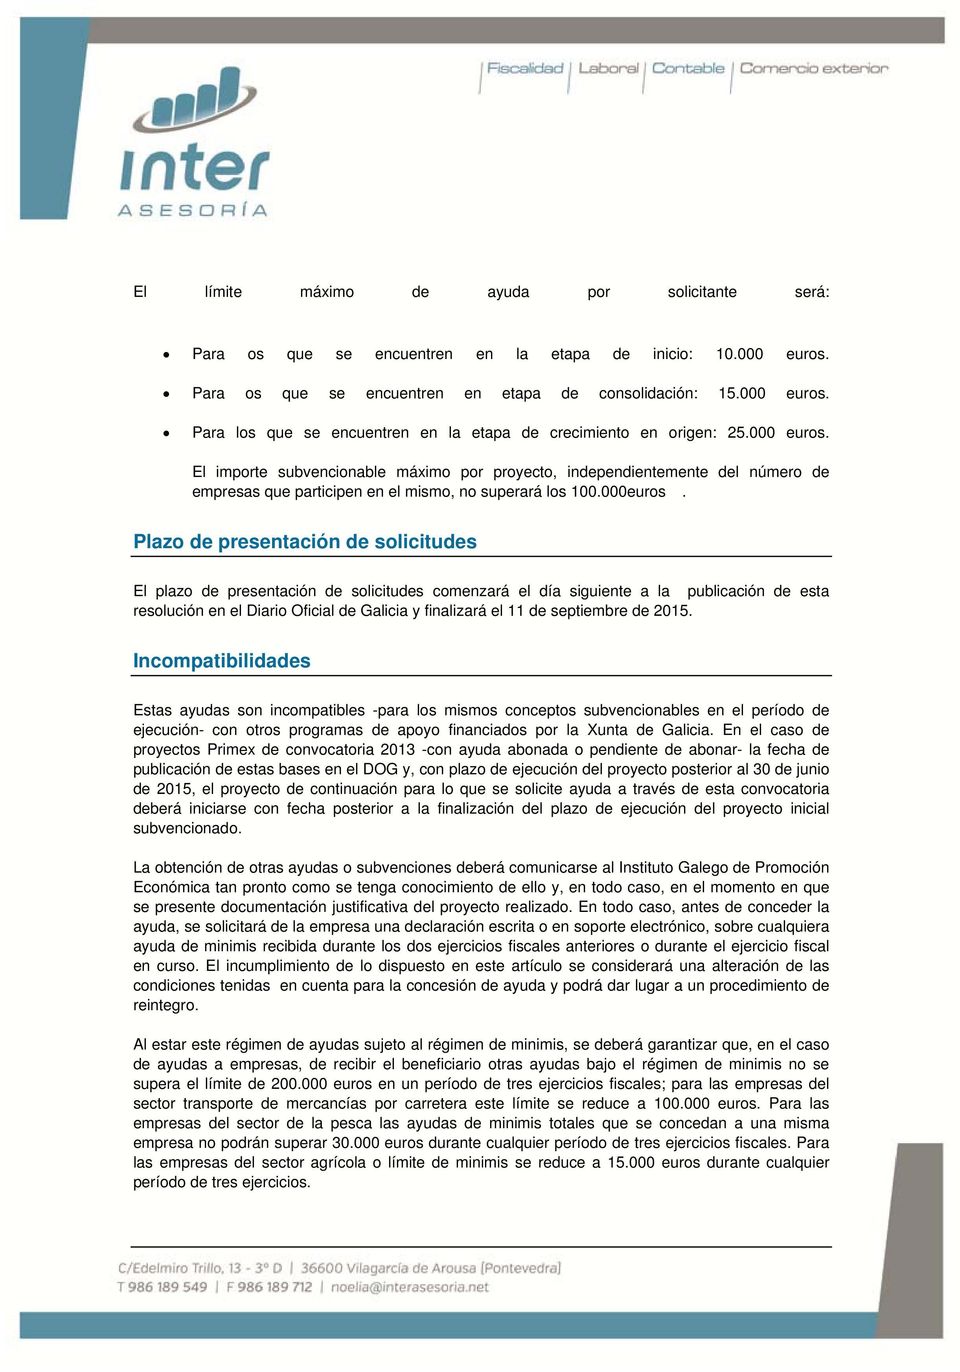 Plazo de presentación de solicitudes El plazo de presentación de solicitudes comenzará el día siguiente a la publicación de esta resolución en el Diario Oficial de Galicia y finalizará el 11 de